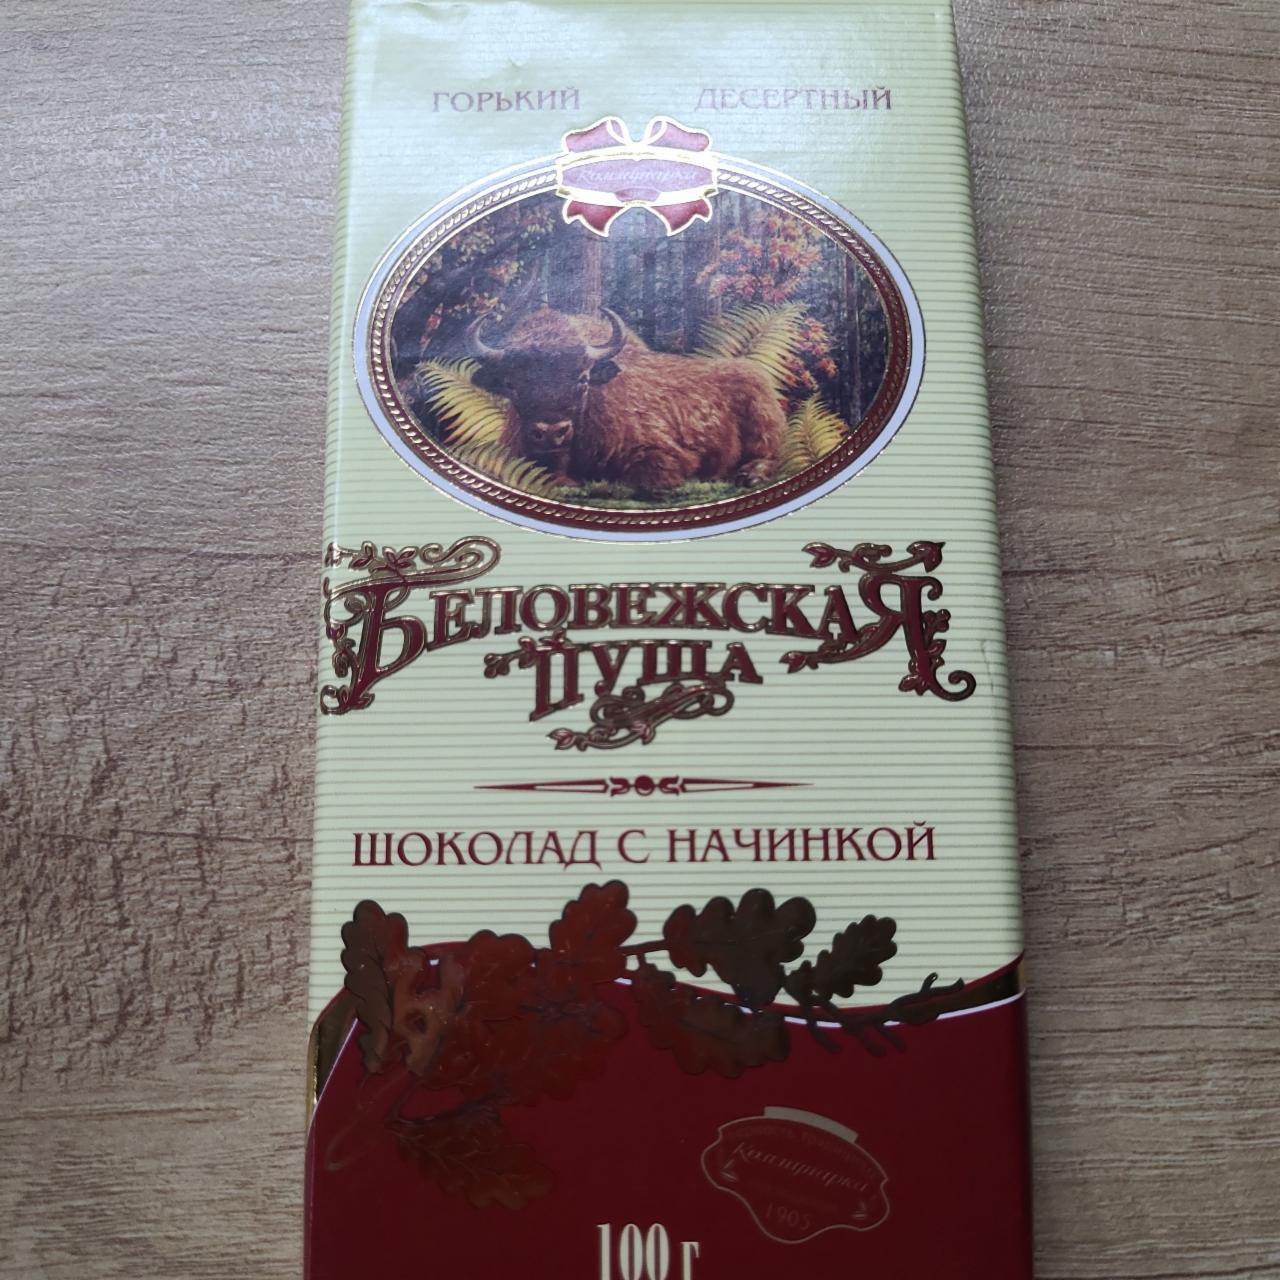 Фото - Шоколад горький десертный Беловежская пуща Коммунарка